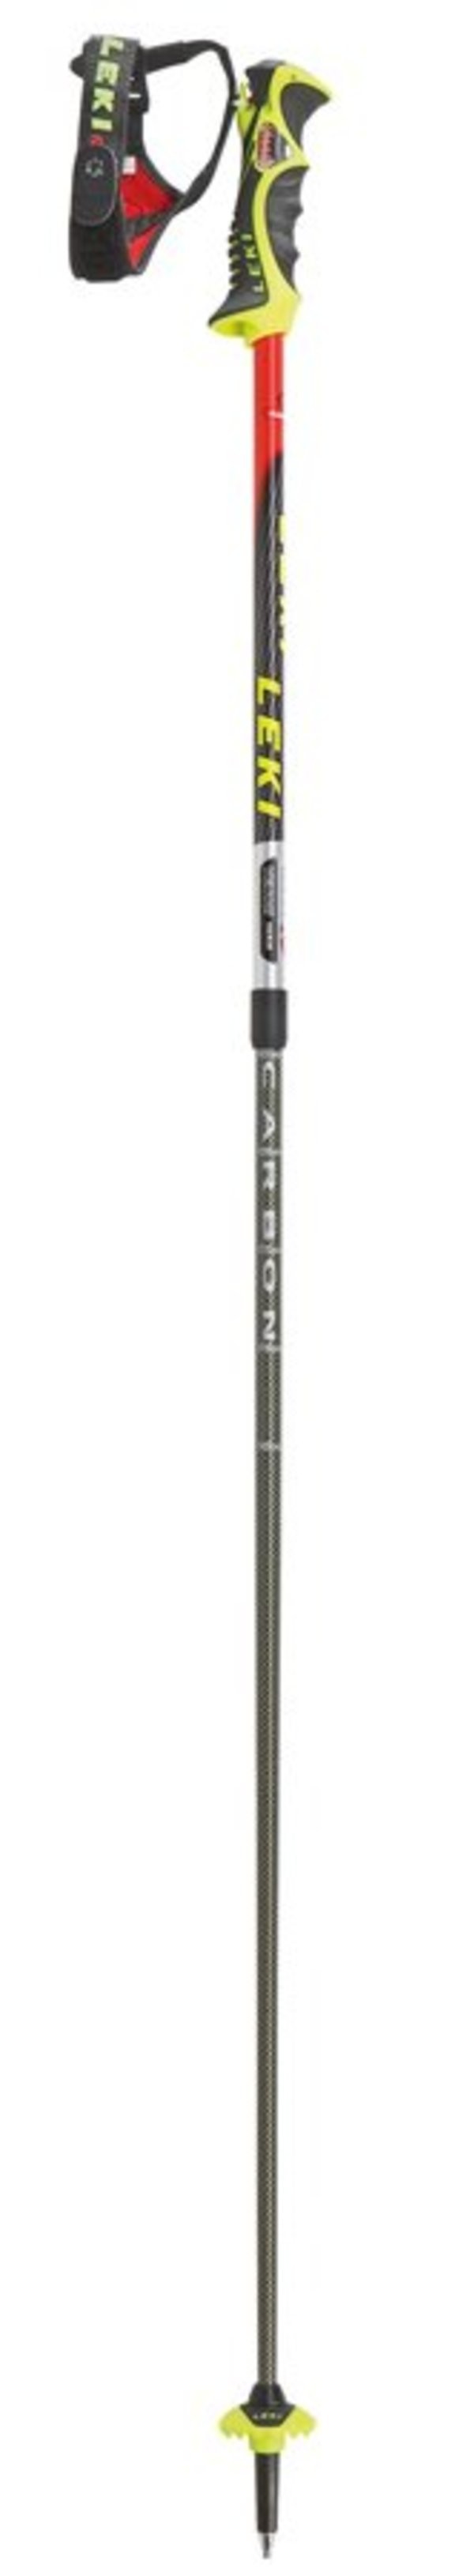 Лыжные палки Leki Venom Vario S (634 6764)